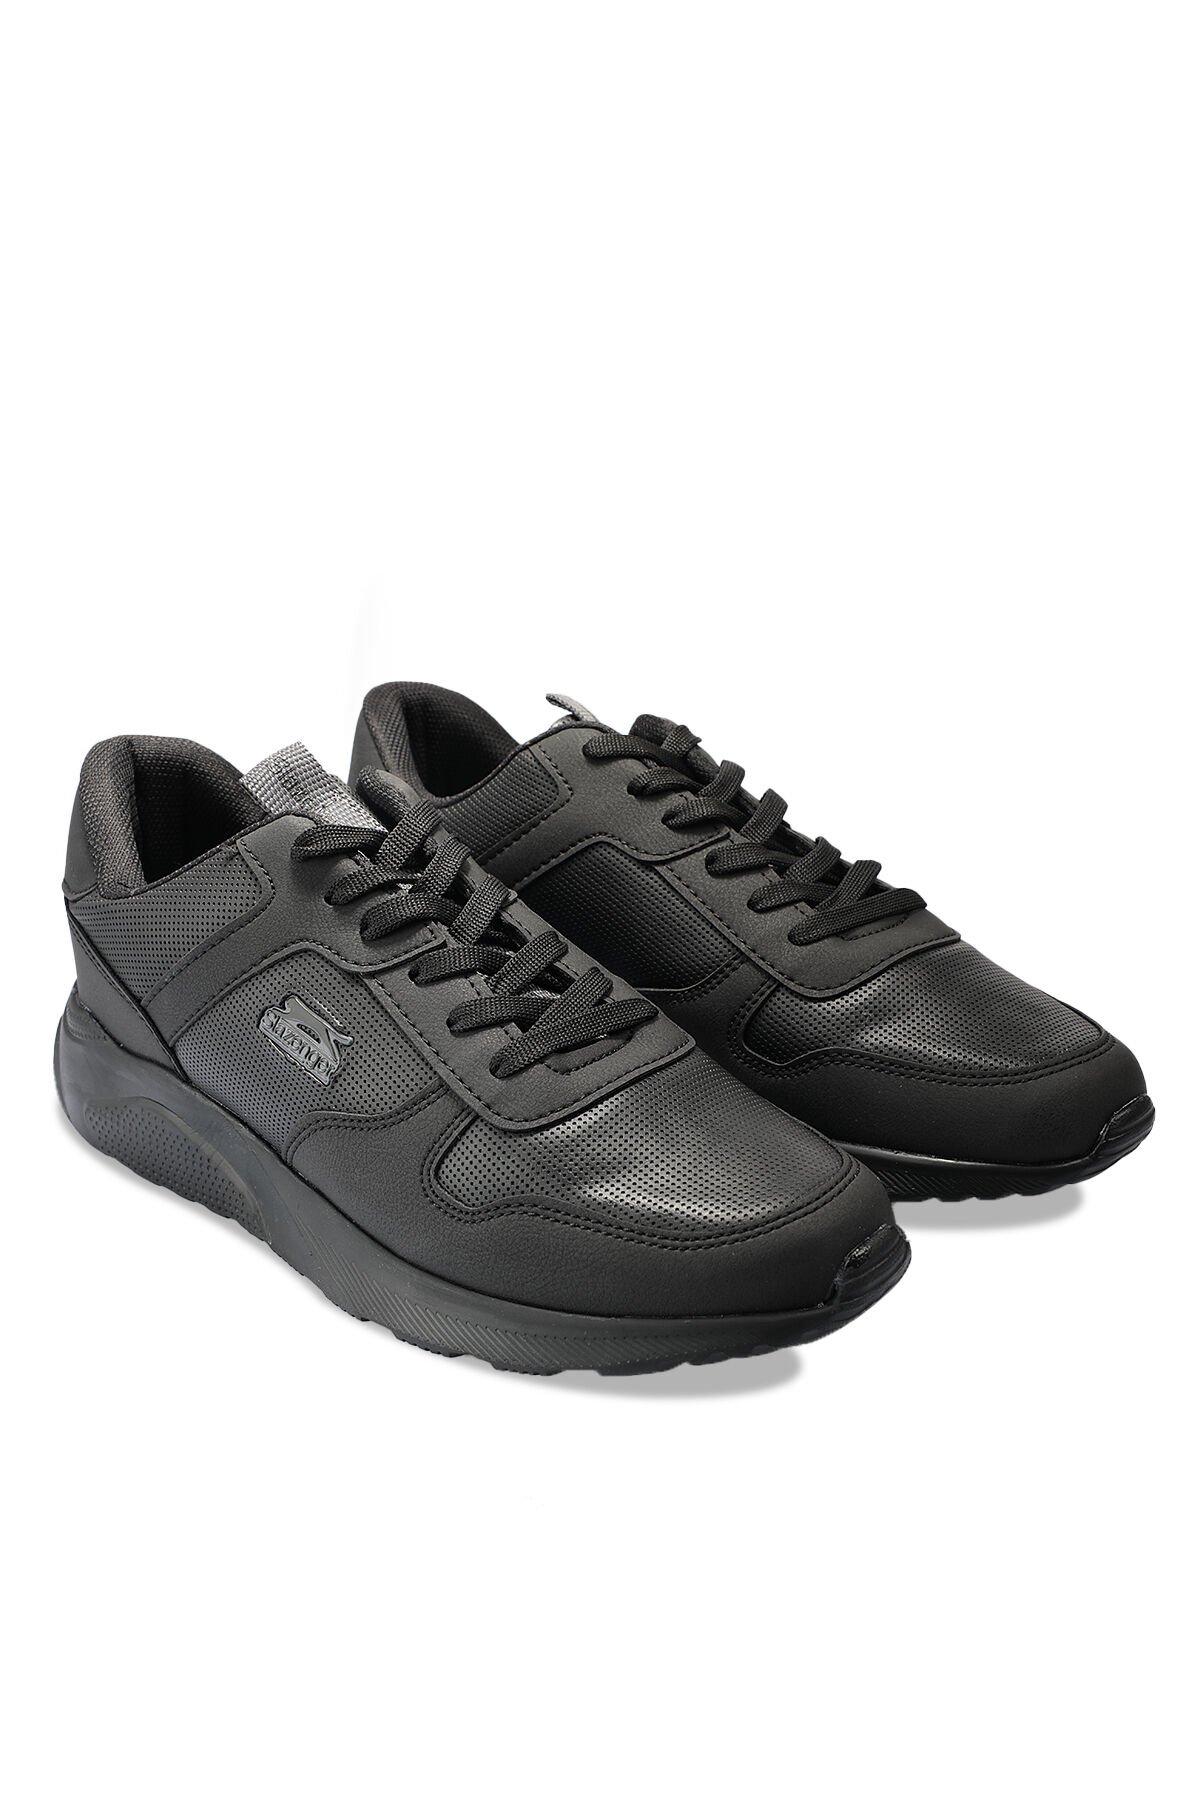 ENRICA Sneaker Erkek Ayakkabı Siyah / Siyah - Thumbnail